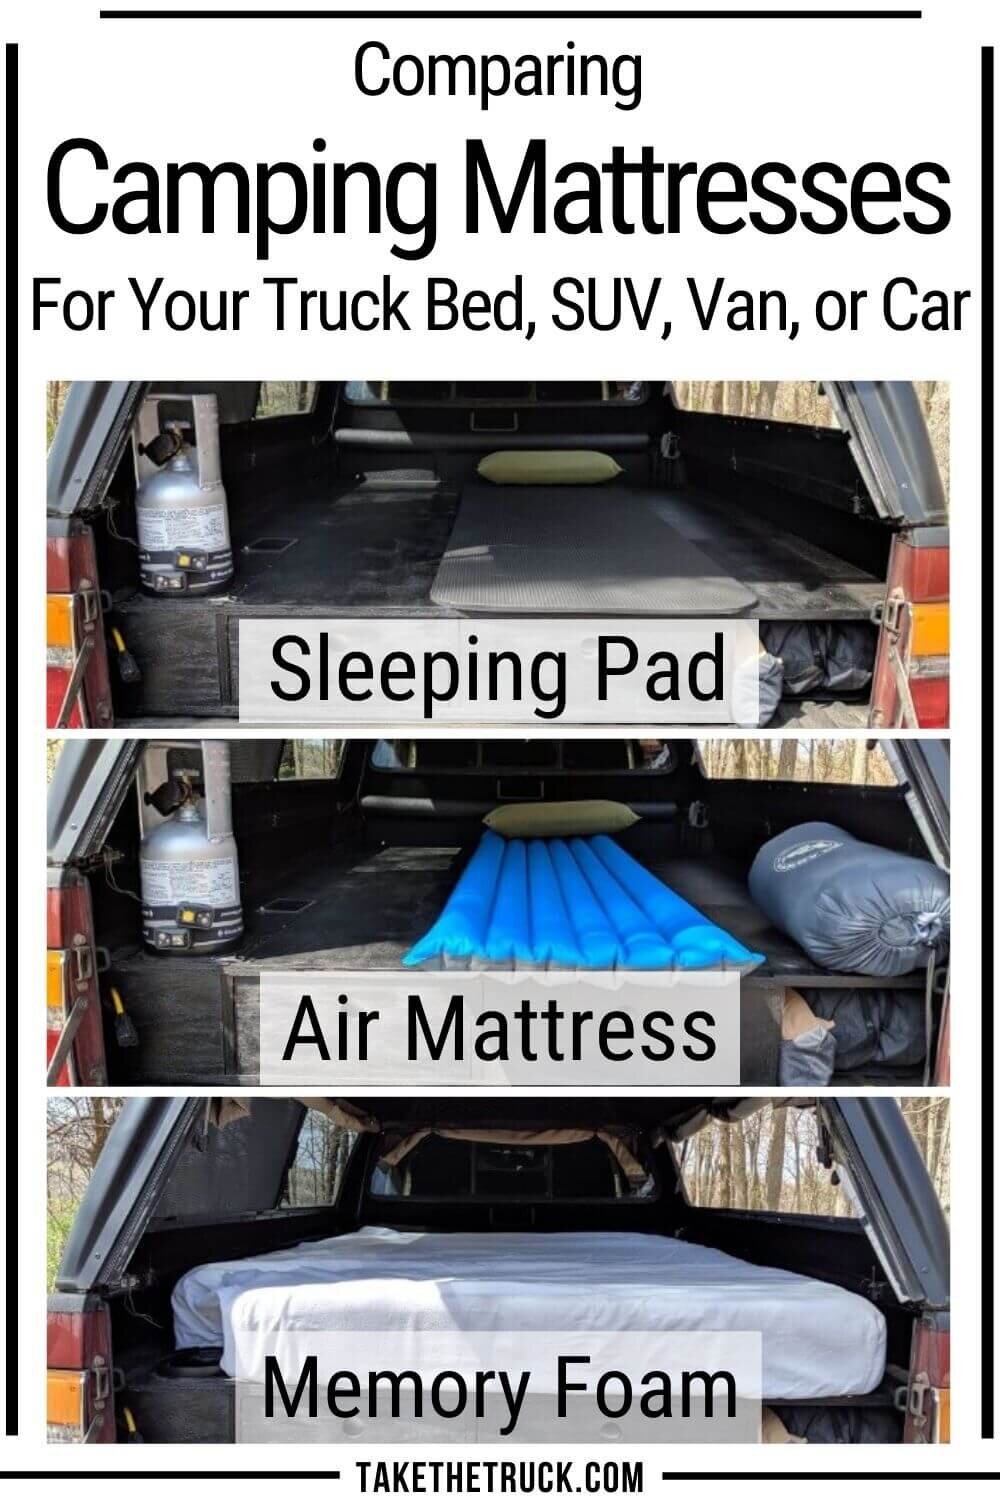 A great comparison of camping mattresses - camping air mattress, memory foam mattress, and sleeping pad as a truck bed mattress, minivan mattress, SUV mattress, or car mattress.